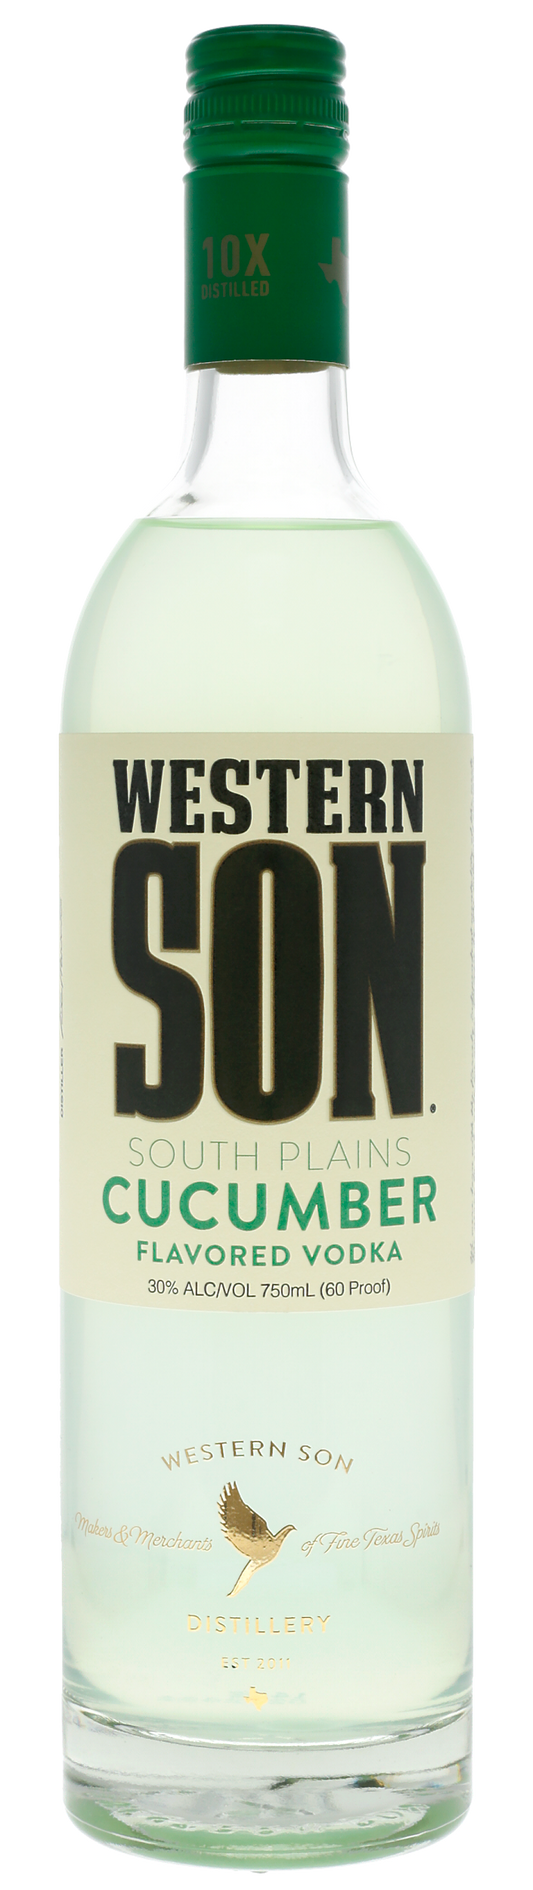 Western Son Cucumber Flavored Vodka